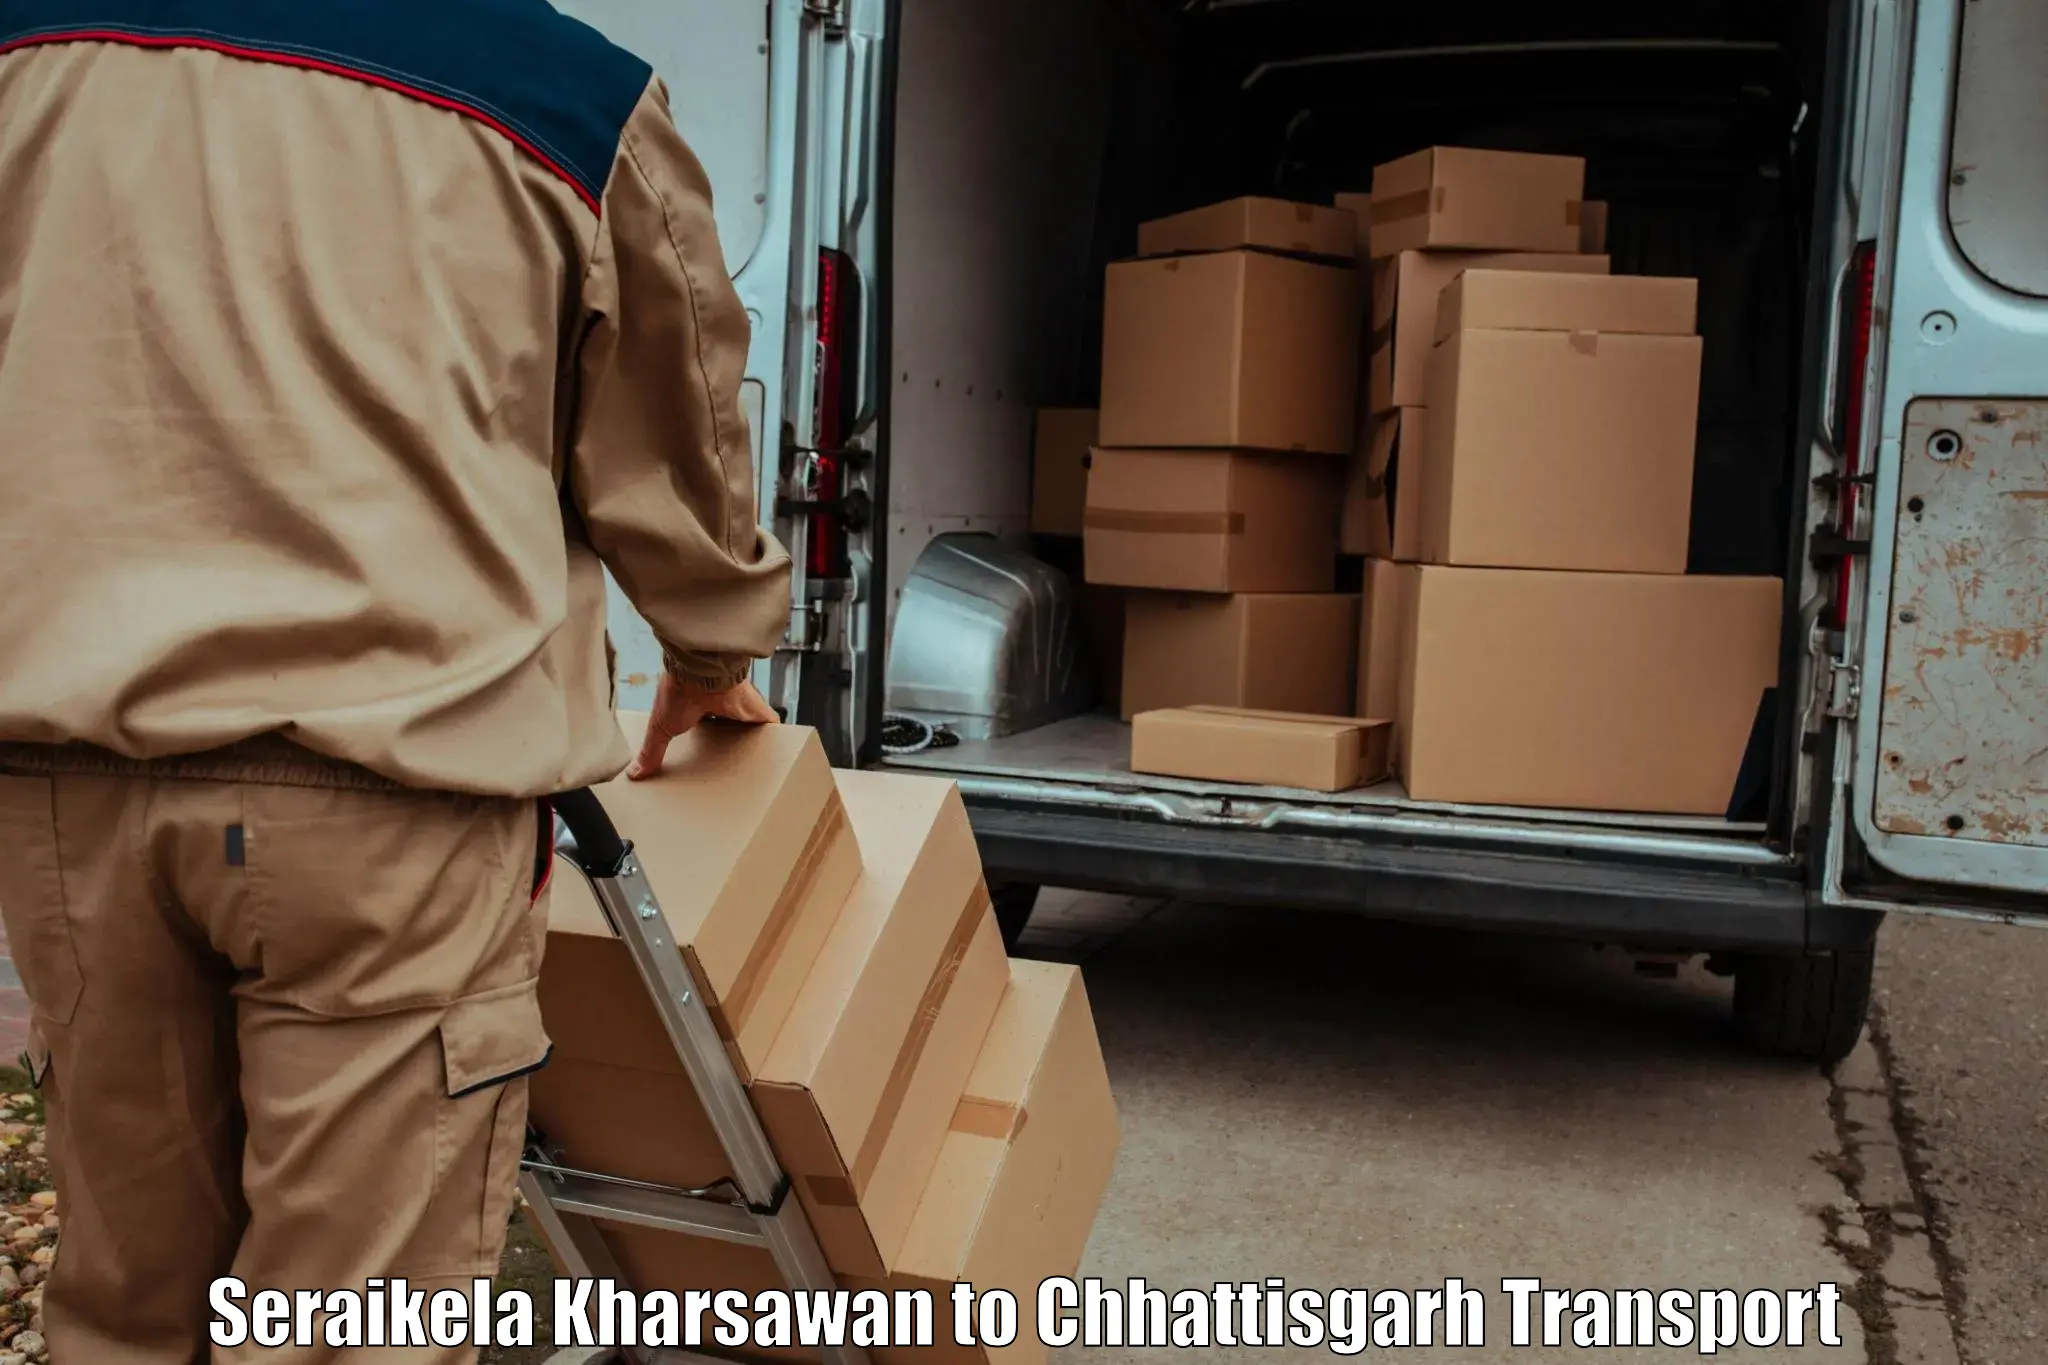 Vehicle transport services Seraikela Kharsawan to Pithora